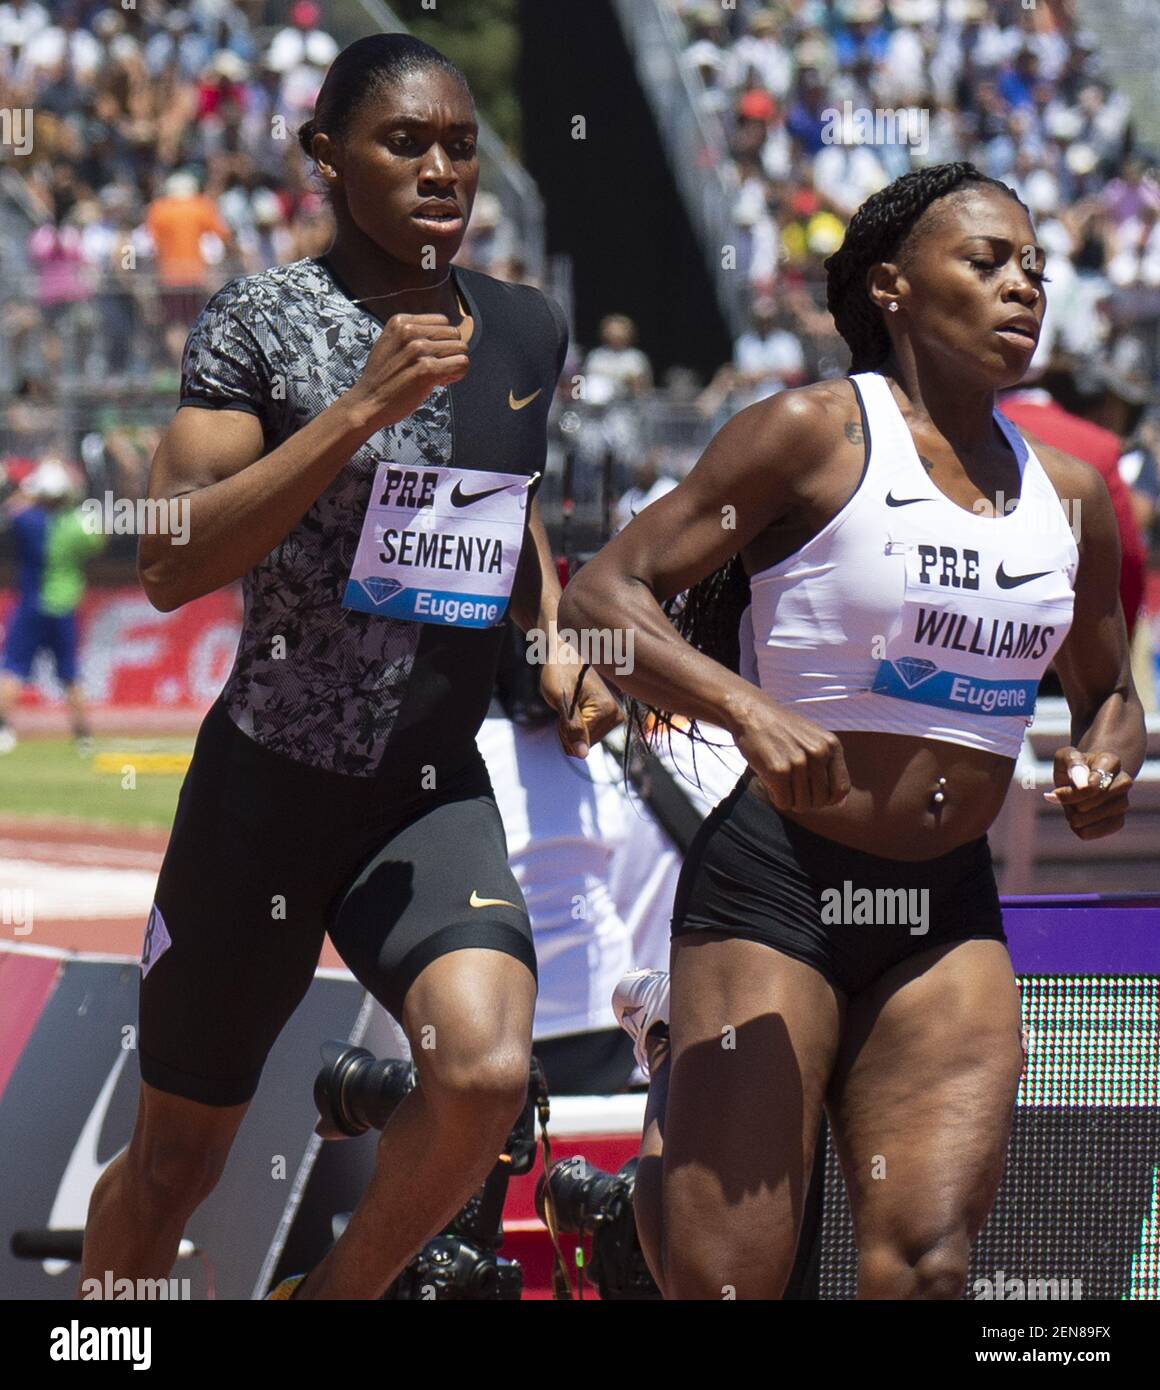 30-jun-2019 Stanford, CA: Caster Semenya y Ajee Wilson charlan antes de la carrera femenina de 800 metros durante el Nike Prefontaine Classic en la Universidad de Stanford Alto, CA. Thurman James / (